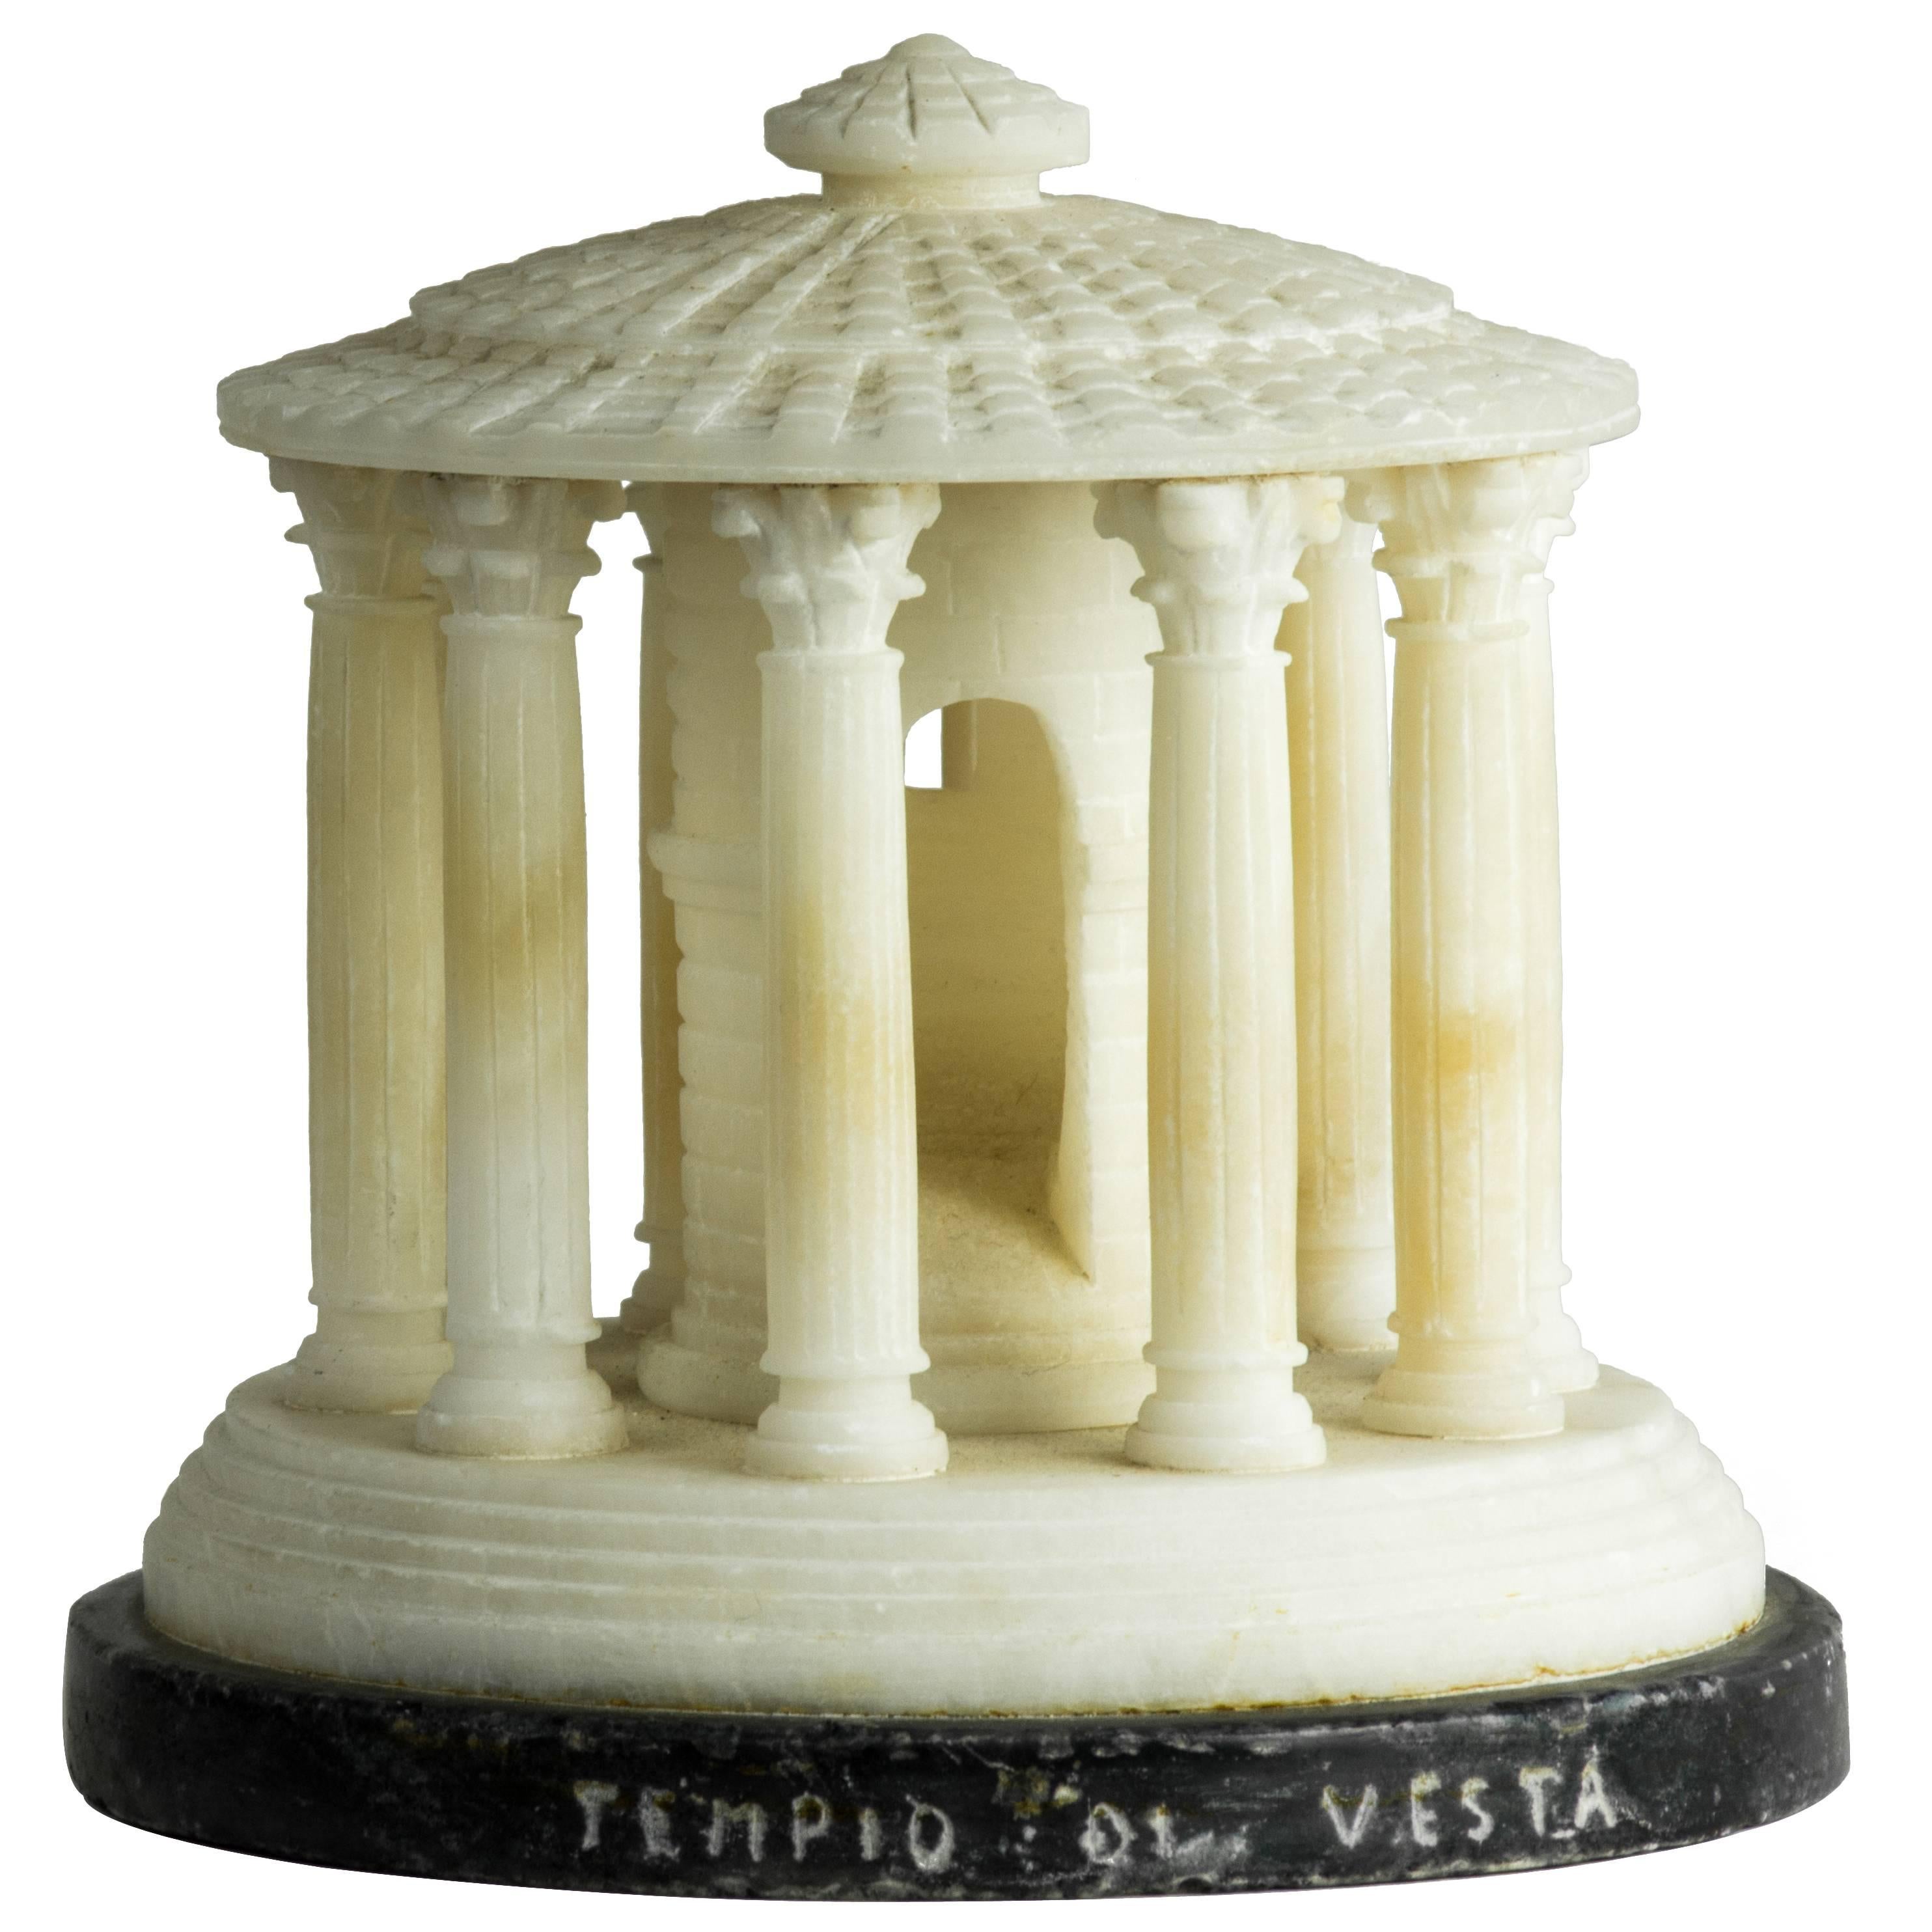 Grand Tour Alabaster Architectural Model of the Temple of Vesta, circa 1880